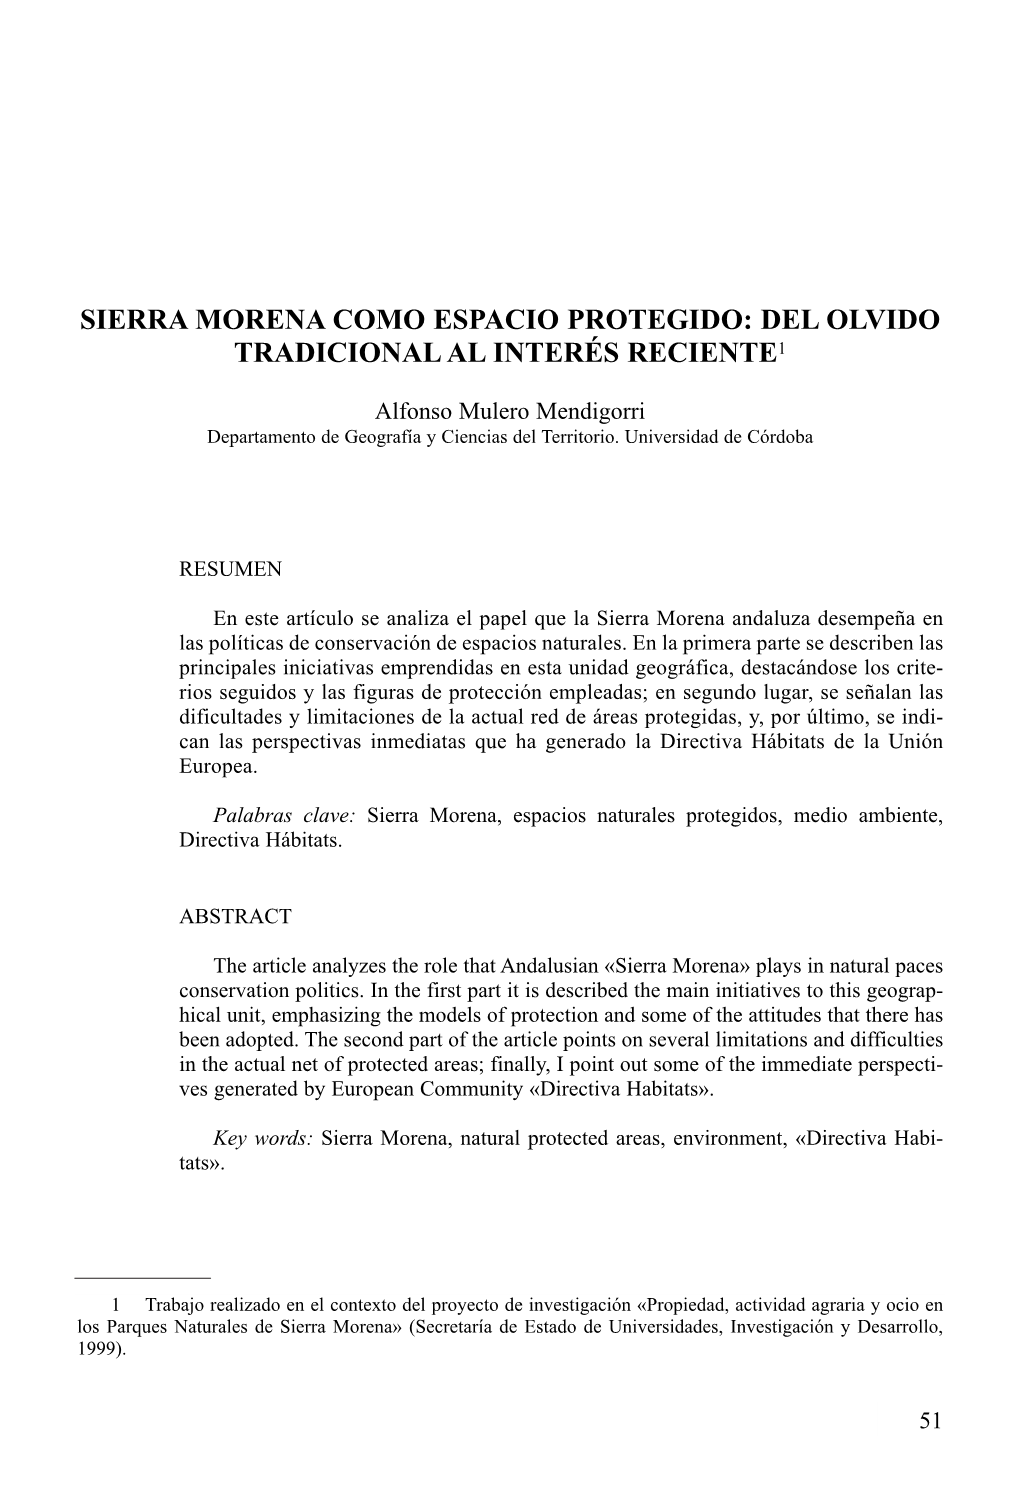 Sierra Morena Como Espacio Protegido: Del Olvido Tradicional Al Interés Reciente1